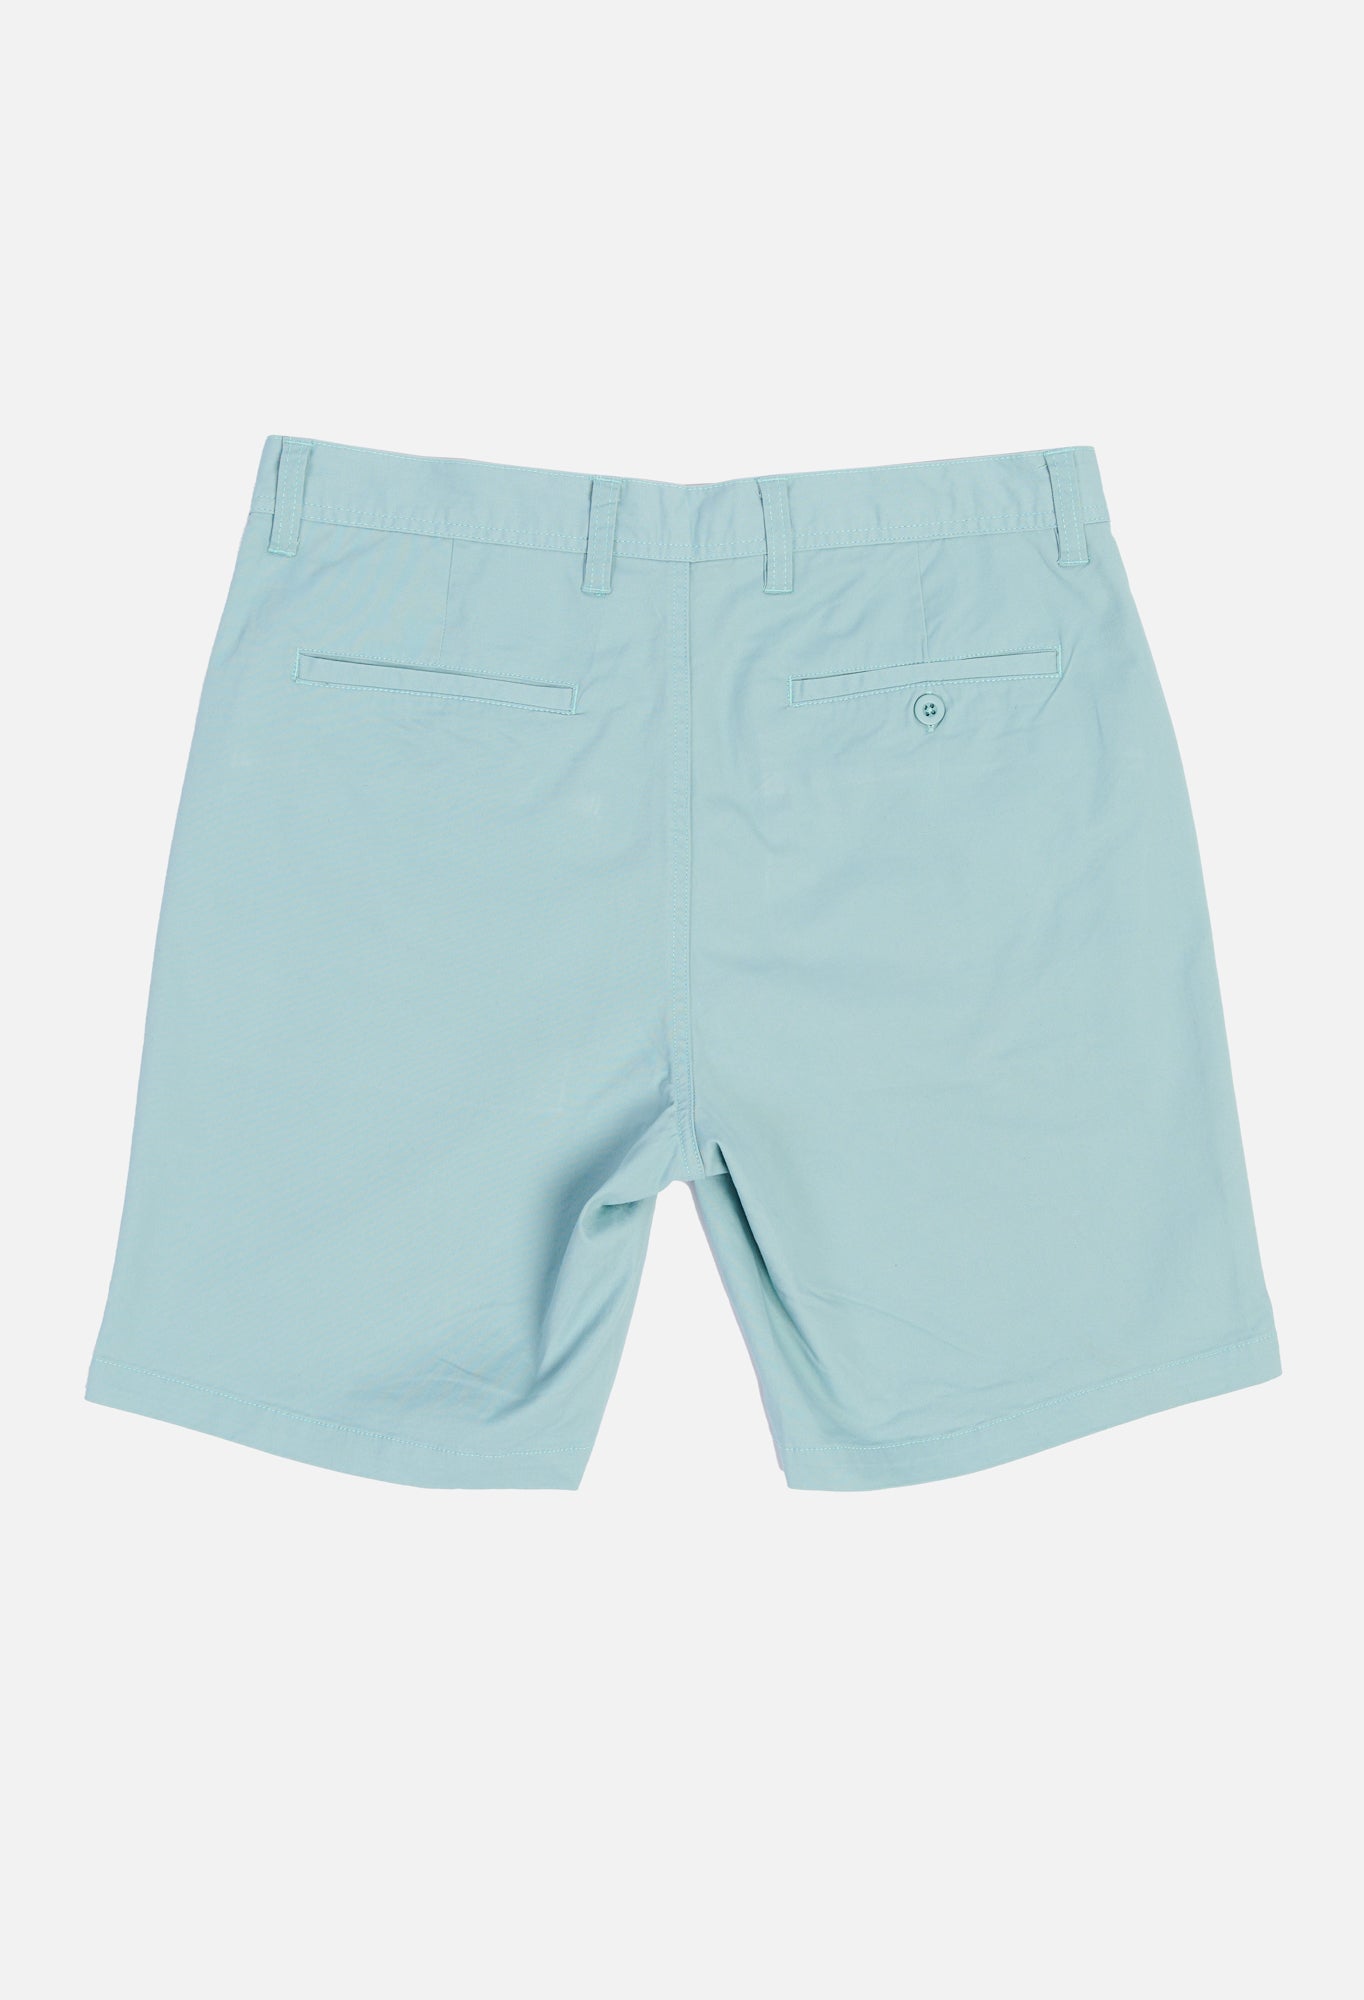 NL Green Chino Shorts